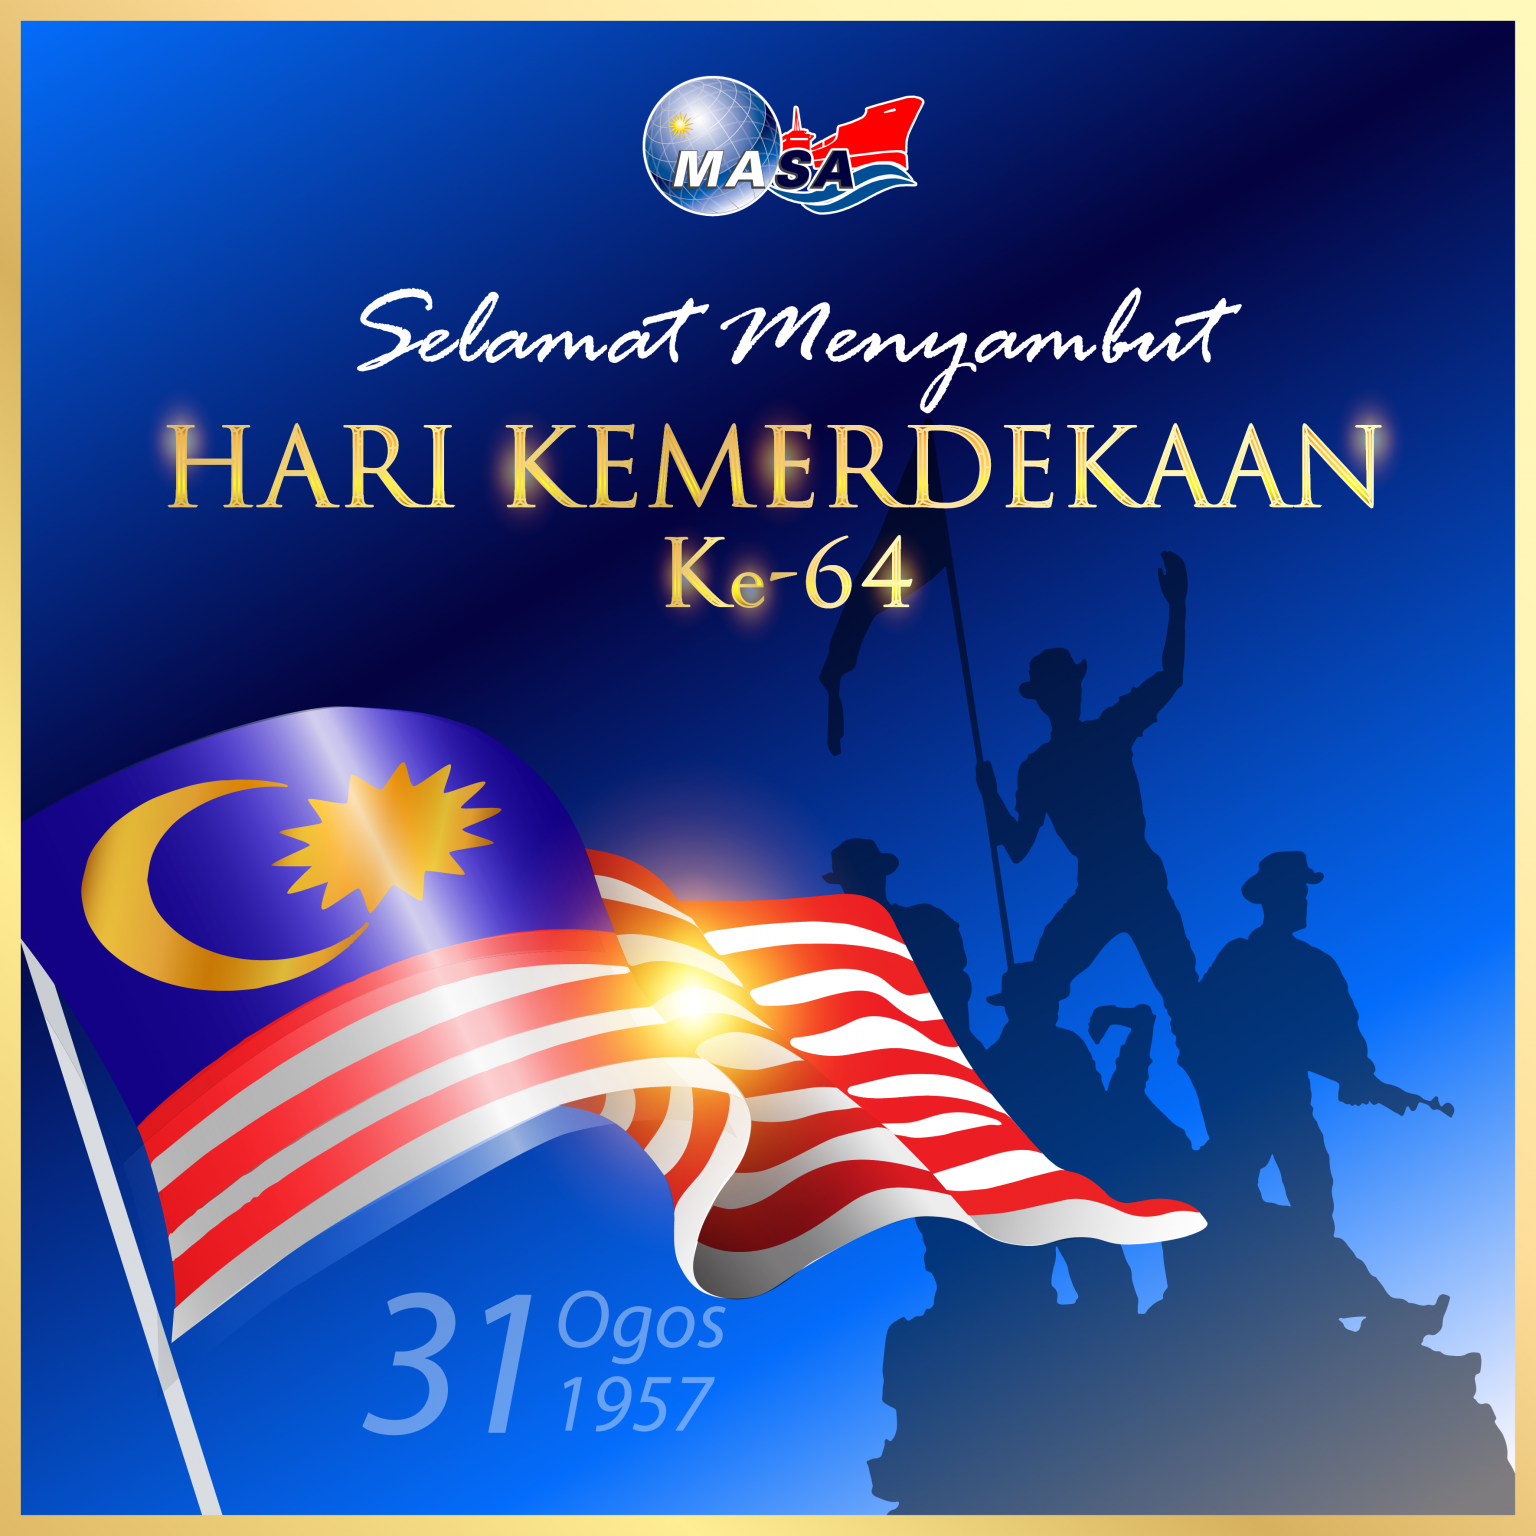 Selamat Menyambut Hari Kemerdekaan Masa Malaysia Shipowners